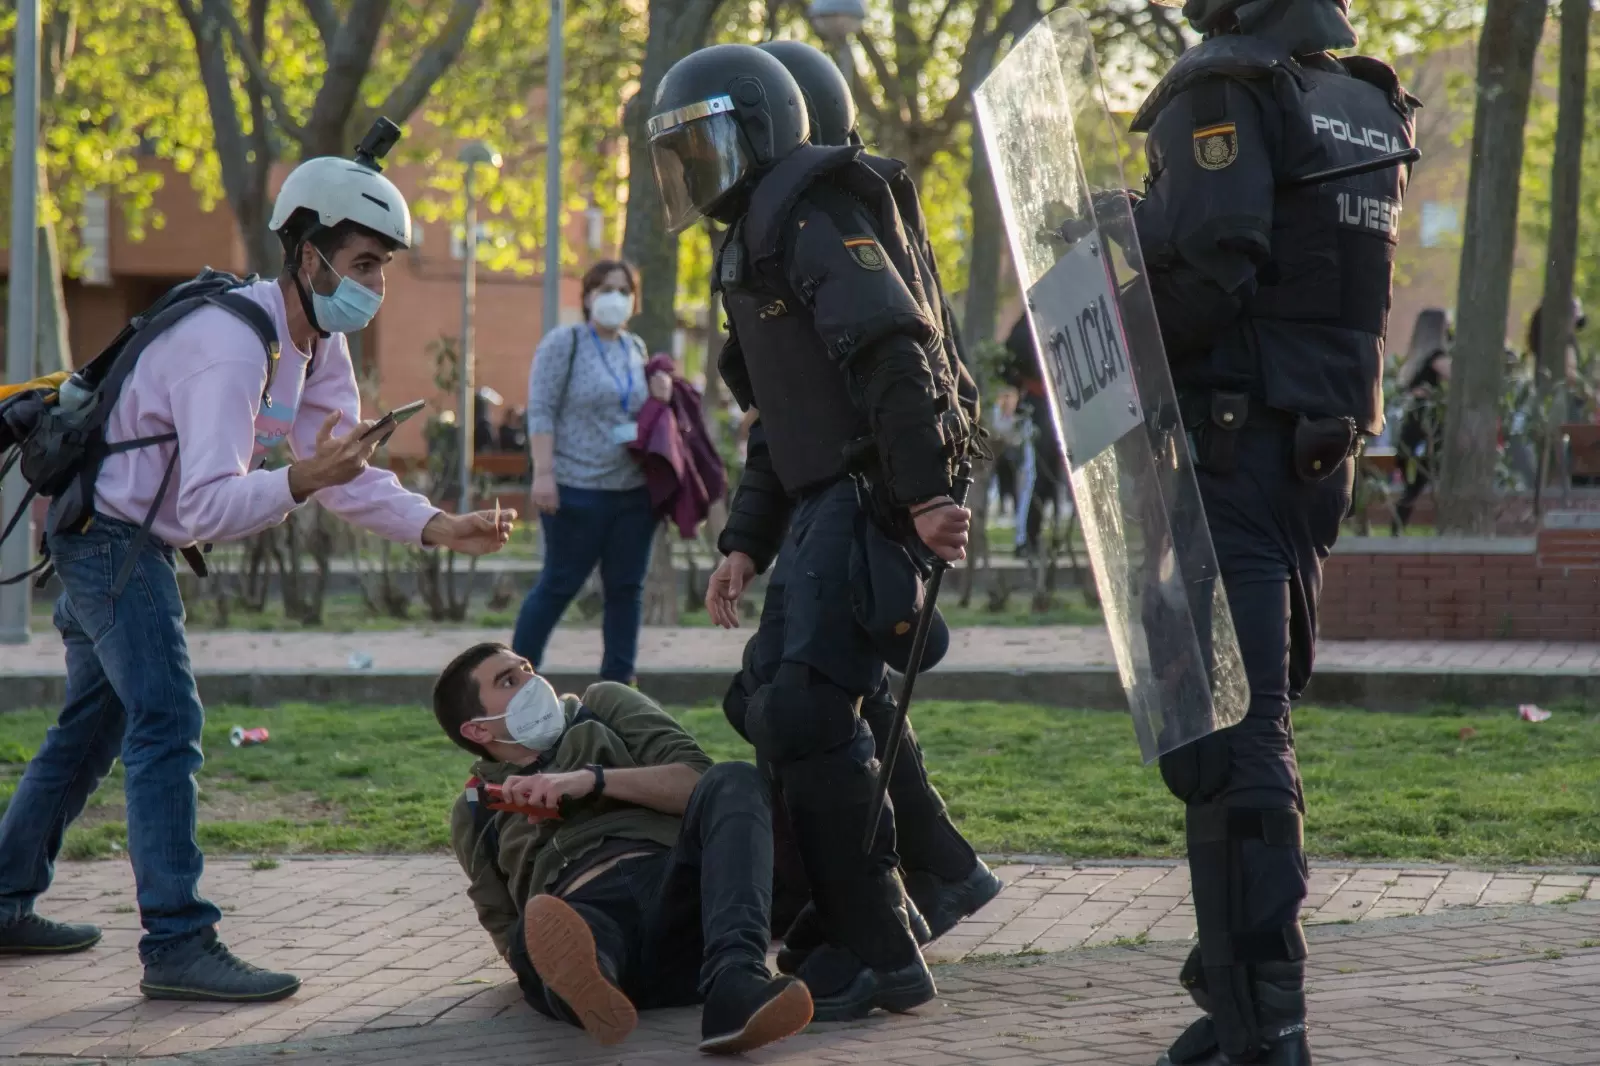 El periodista Guillermo Martínez, en el suelo junto a dos policías antidisturbios, el 7 de abril de 2021, día del mitin de Vox en Vallecas. — Fernando Capdepón Arroyo